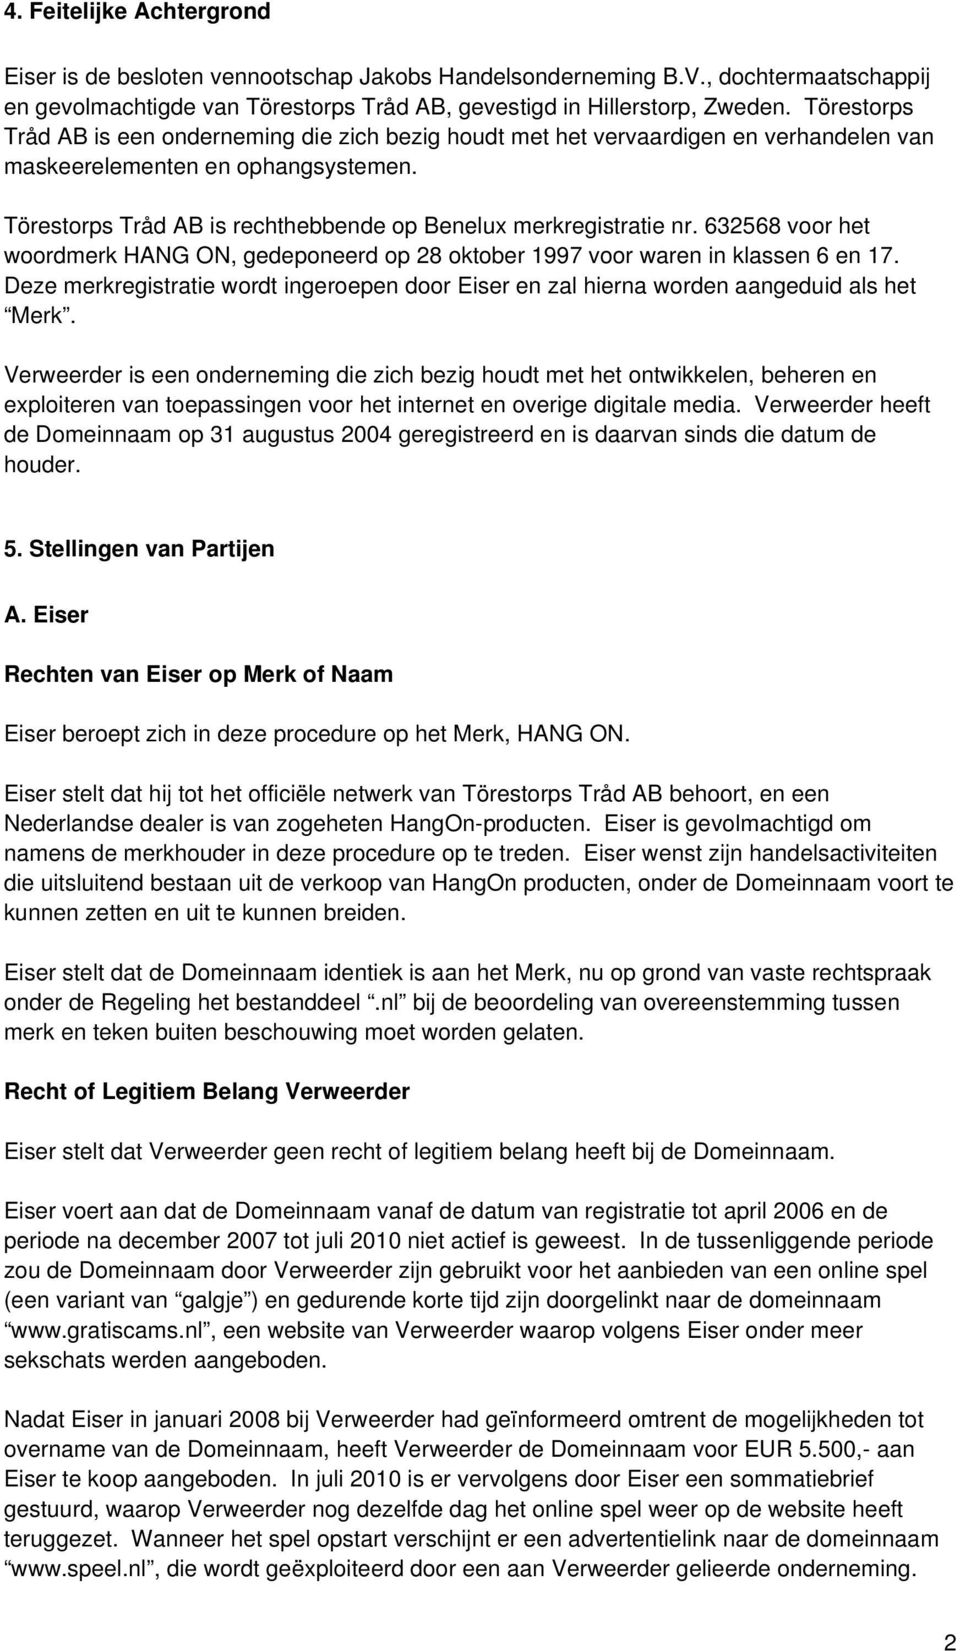 Törestorps Tråd AB is rechthebbende op Benelux merkregistratie nr. 632568 voor het woordmerk HANG ON, gedeponeerd op 28 oktober 1997 voor waren in klassen 6 en 17.